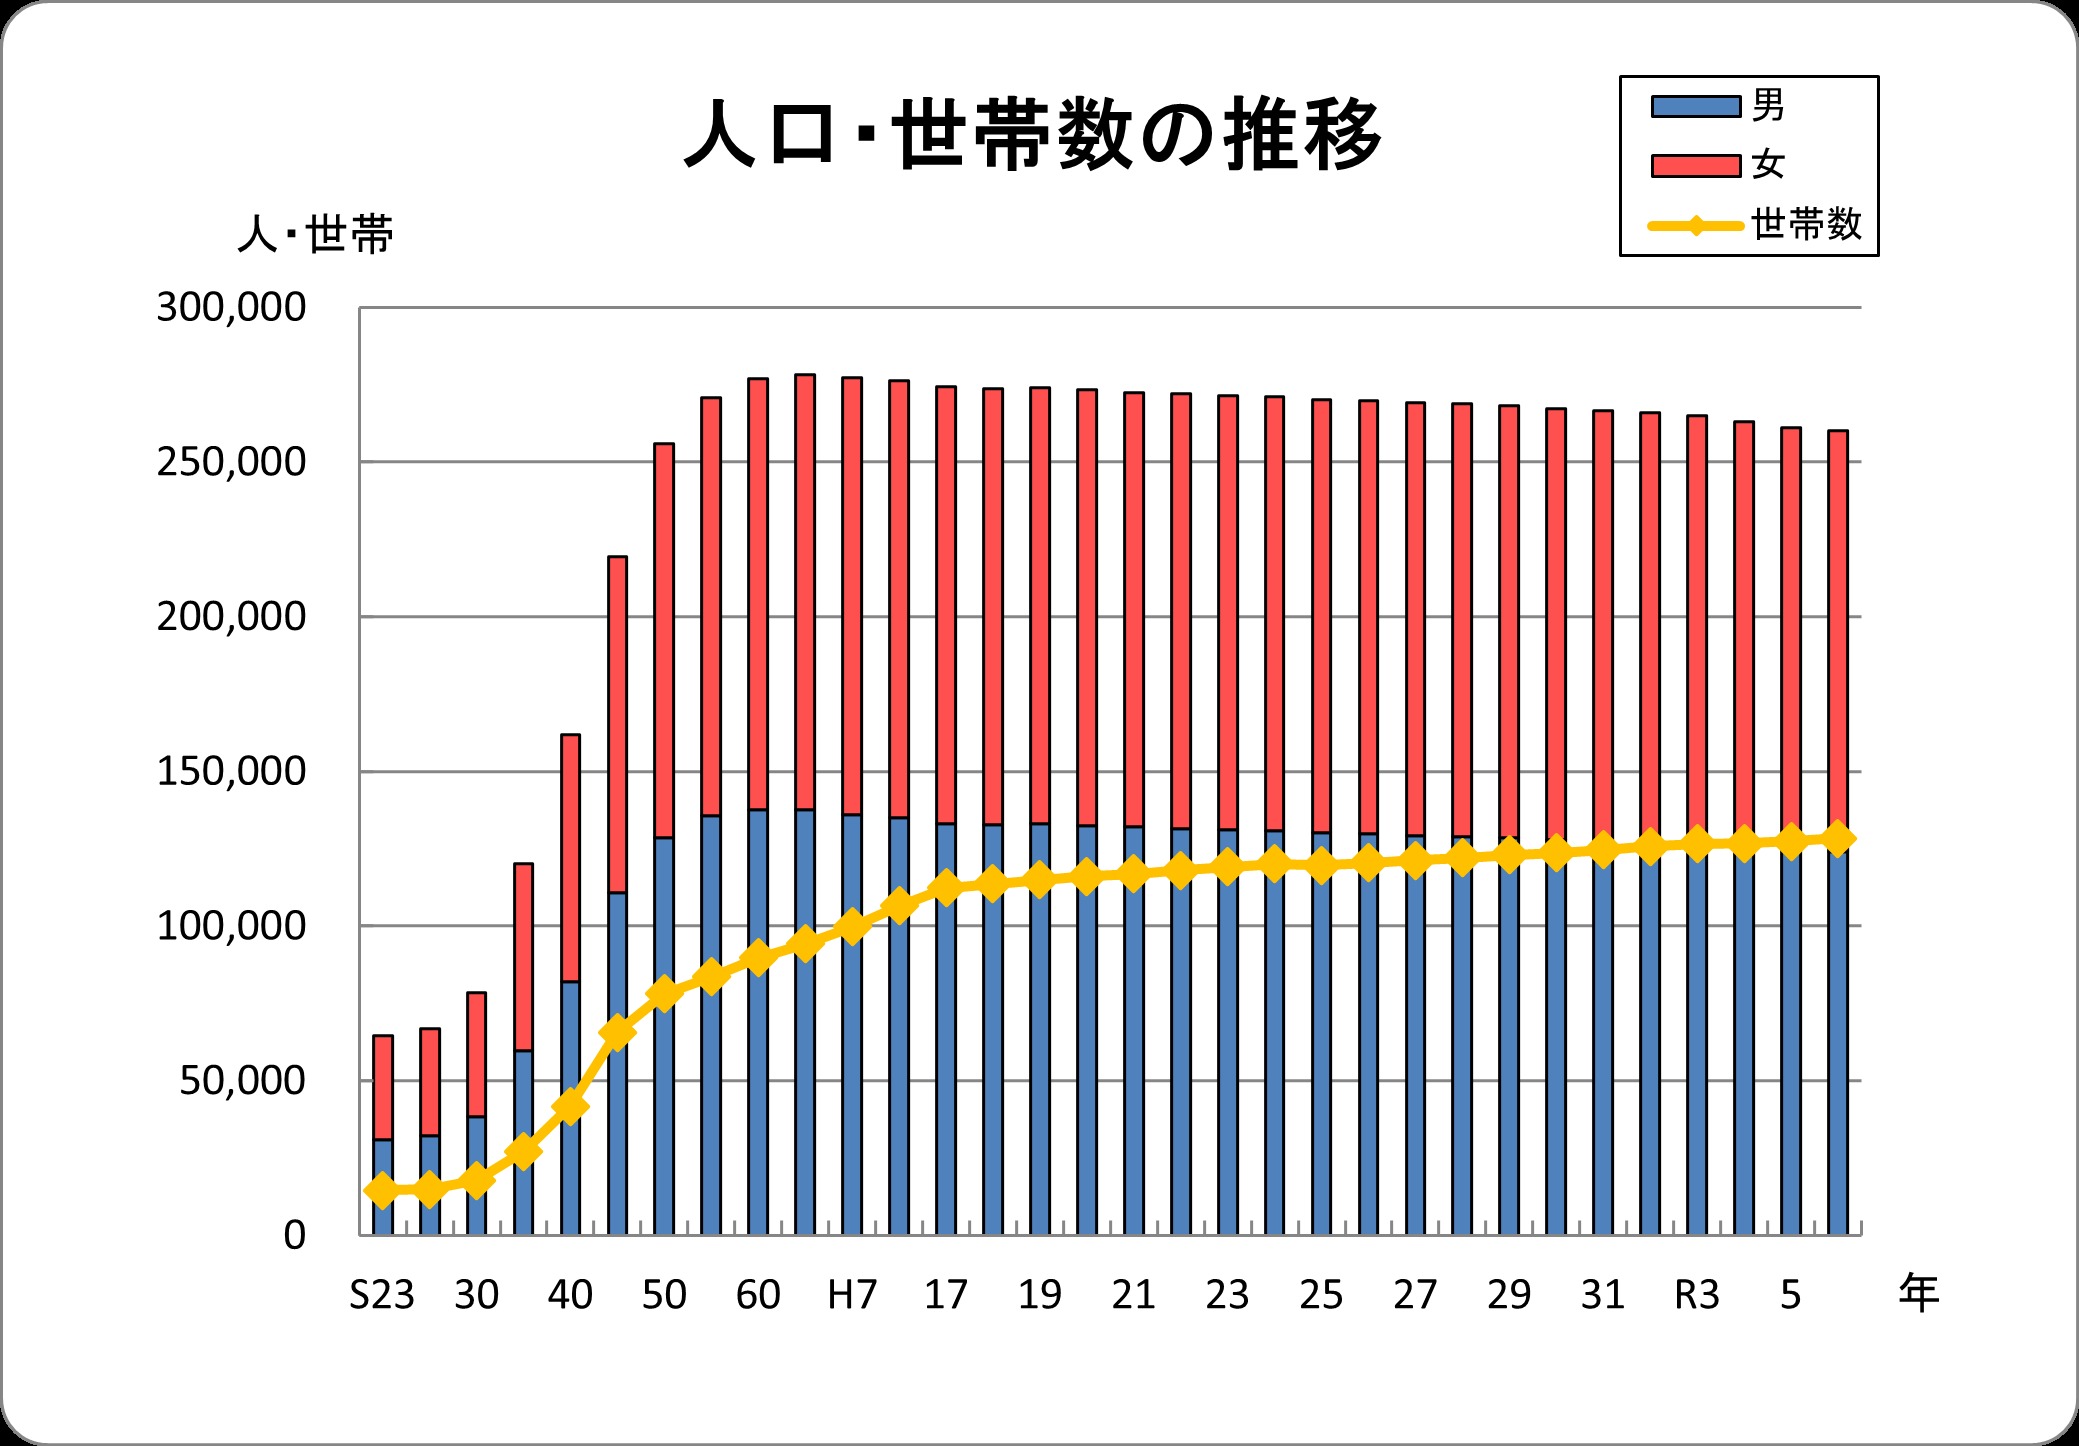 昭和23年から現在までの八尾市の人口・世帯数の推移をグラフにしたものです。